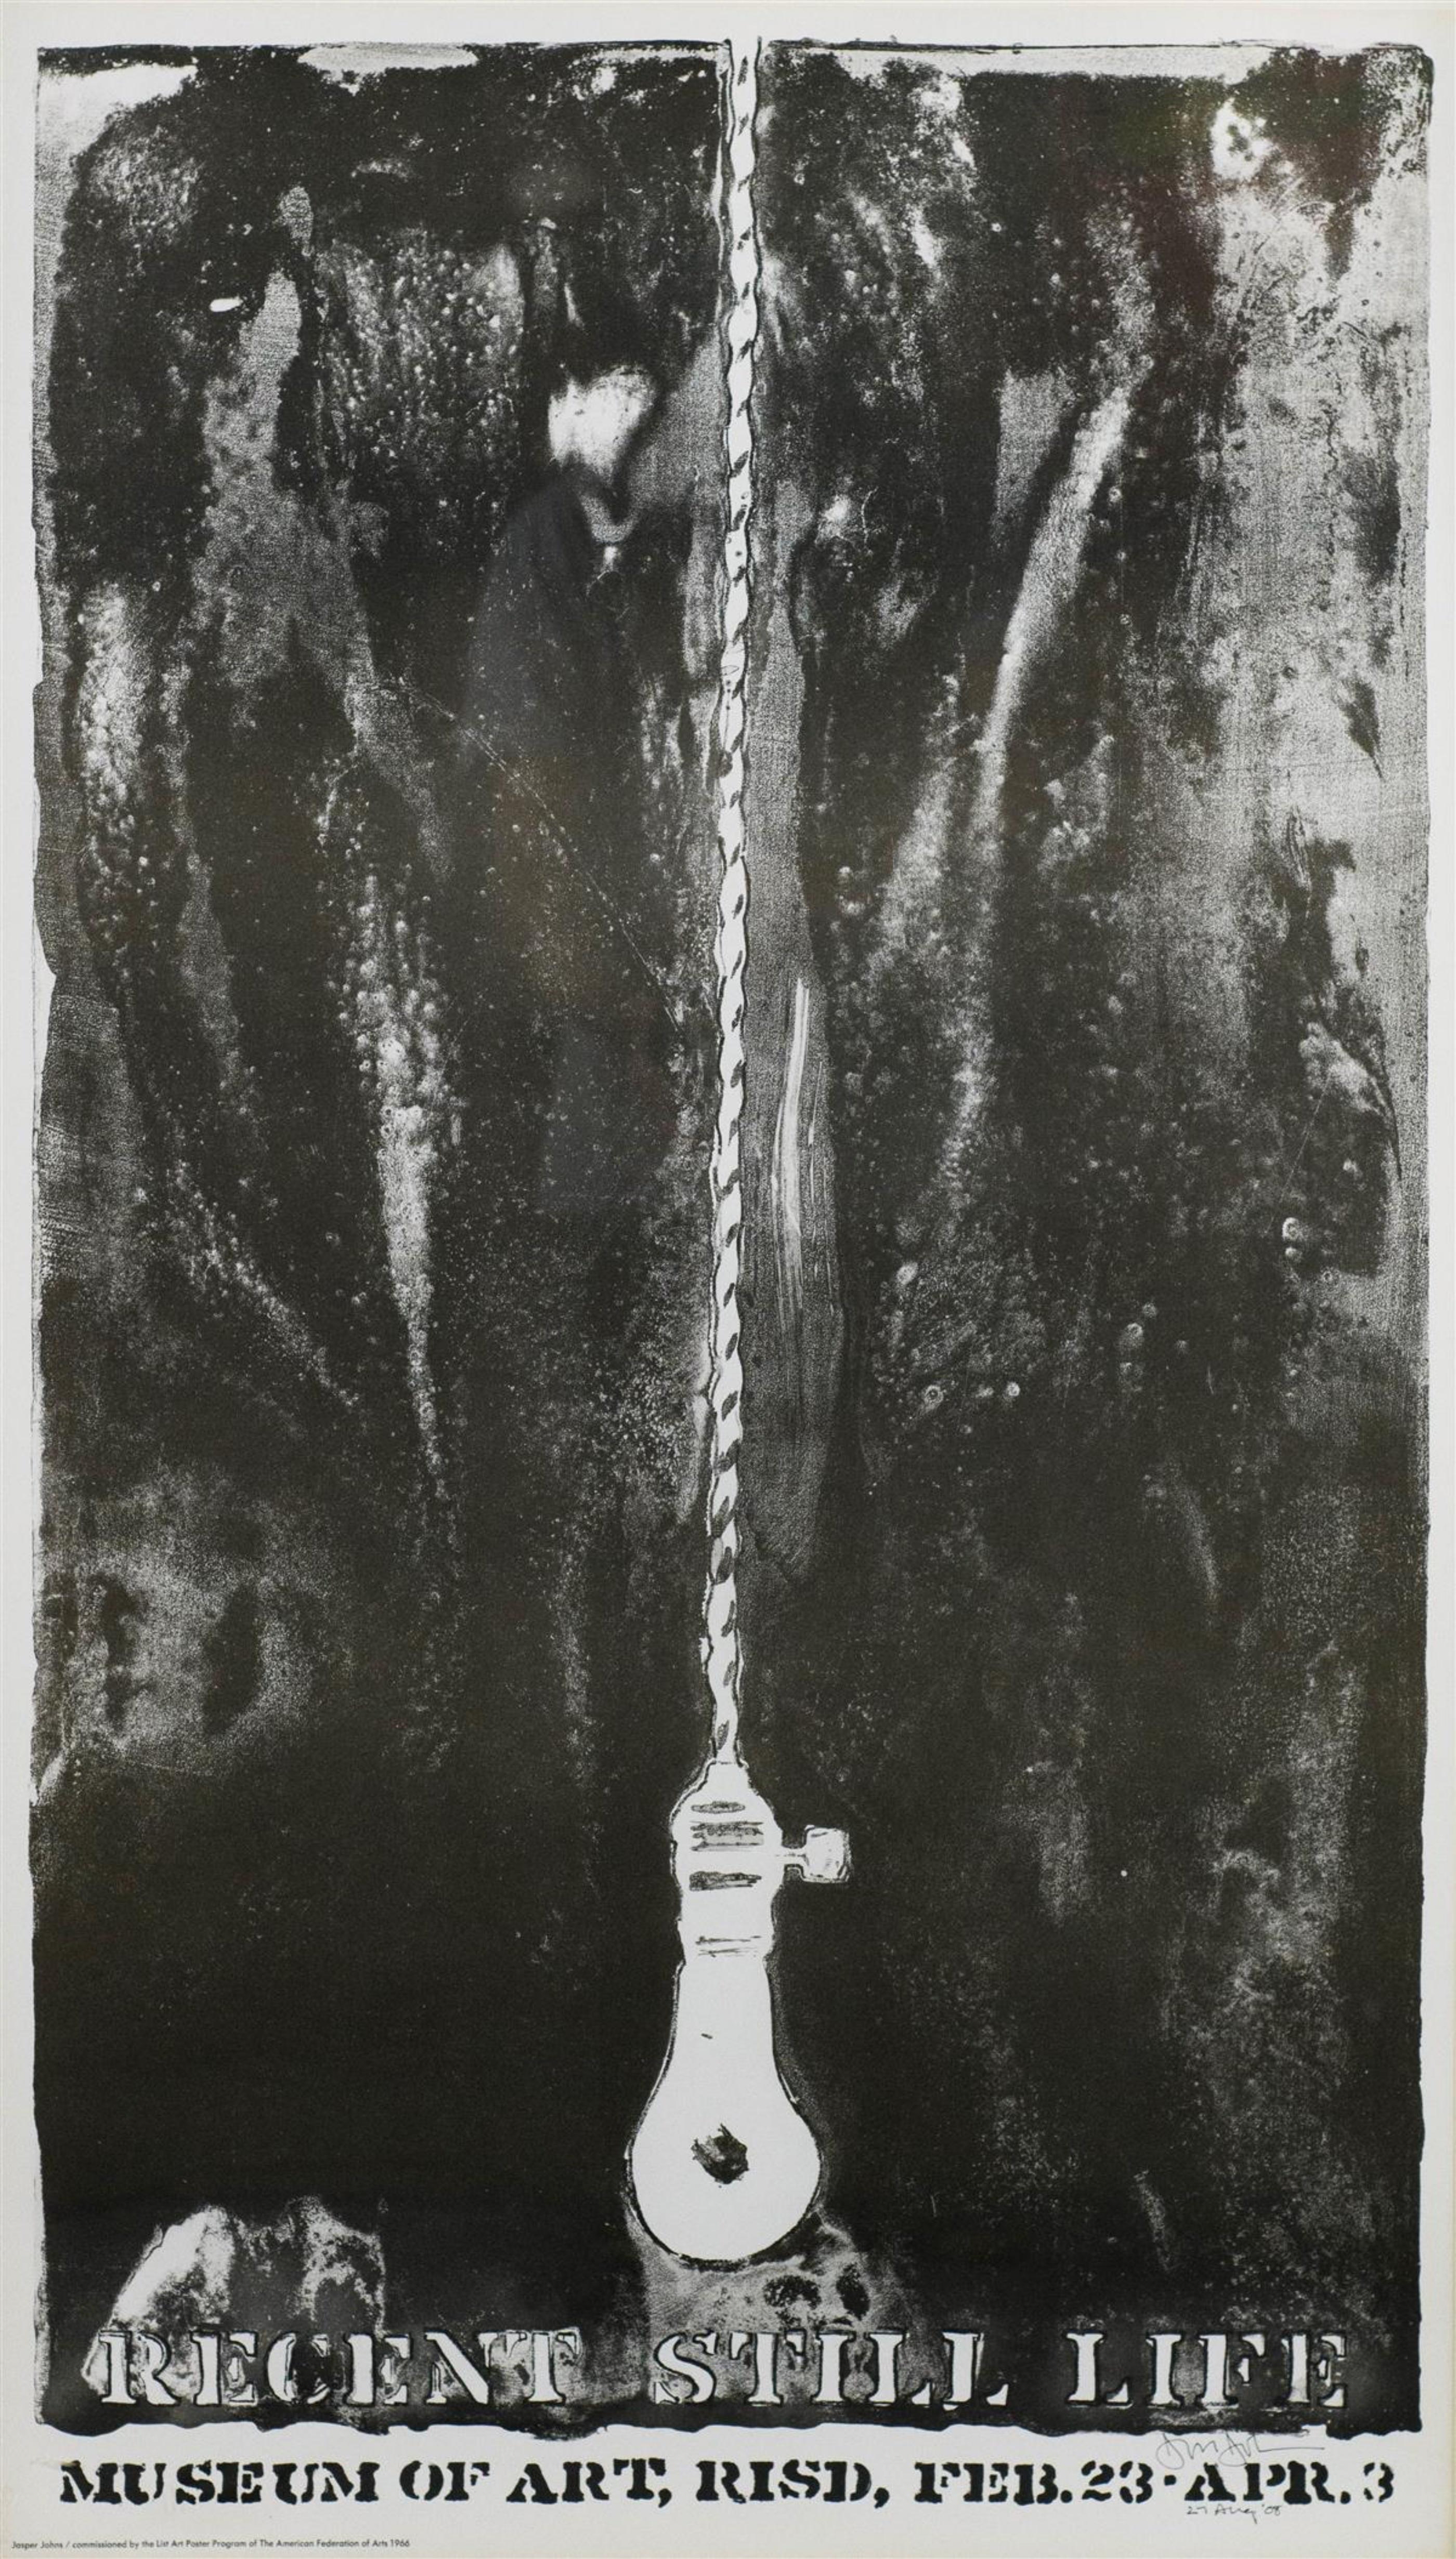 Jasper Johns
Aktuelles Stillleben (handsigniert und datiert von Jasper Johns), 1966
Lichtdruck. Handsigniert und datiert von Jasper Johns
Auflage von 2100 (dieses Werk ist ausnahmsweise von Johns handsigniert und datiert; die reguläre Auflage ist